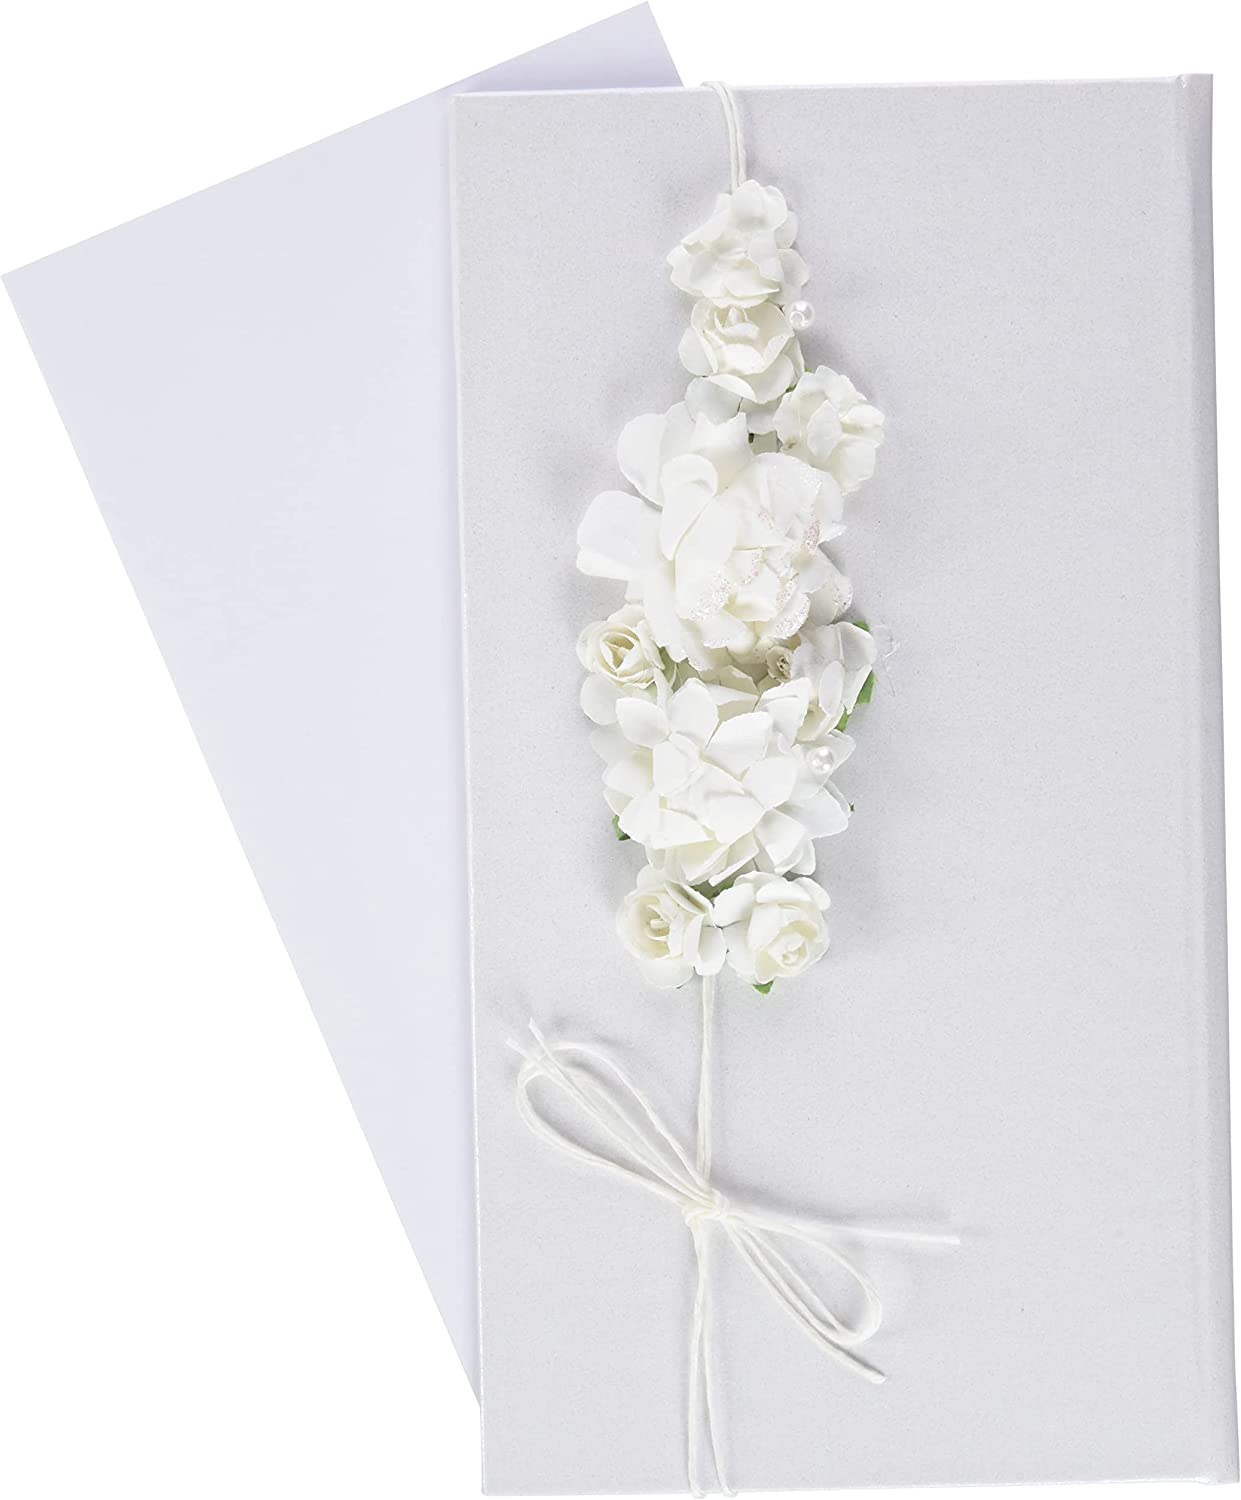 Umschlag für Geldgeschenke mit Blumen, weiß, 10,5x19,5cm